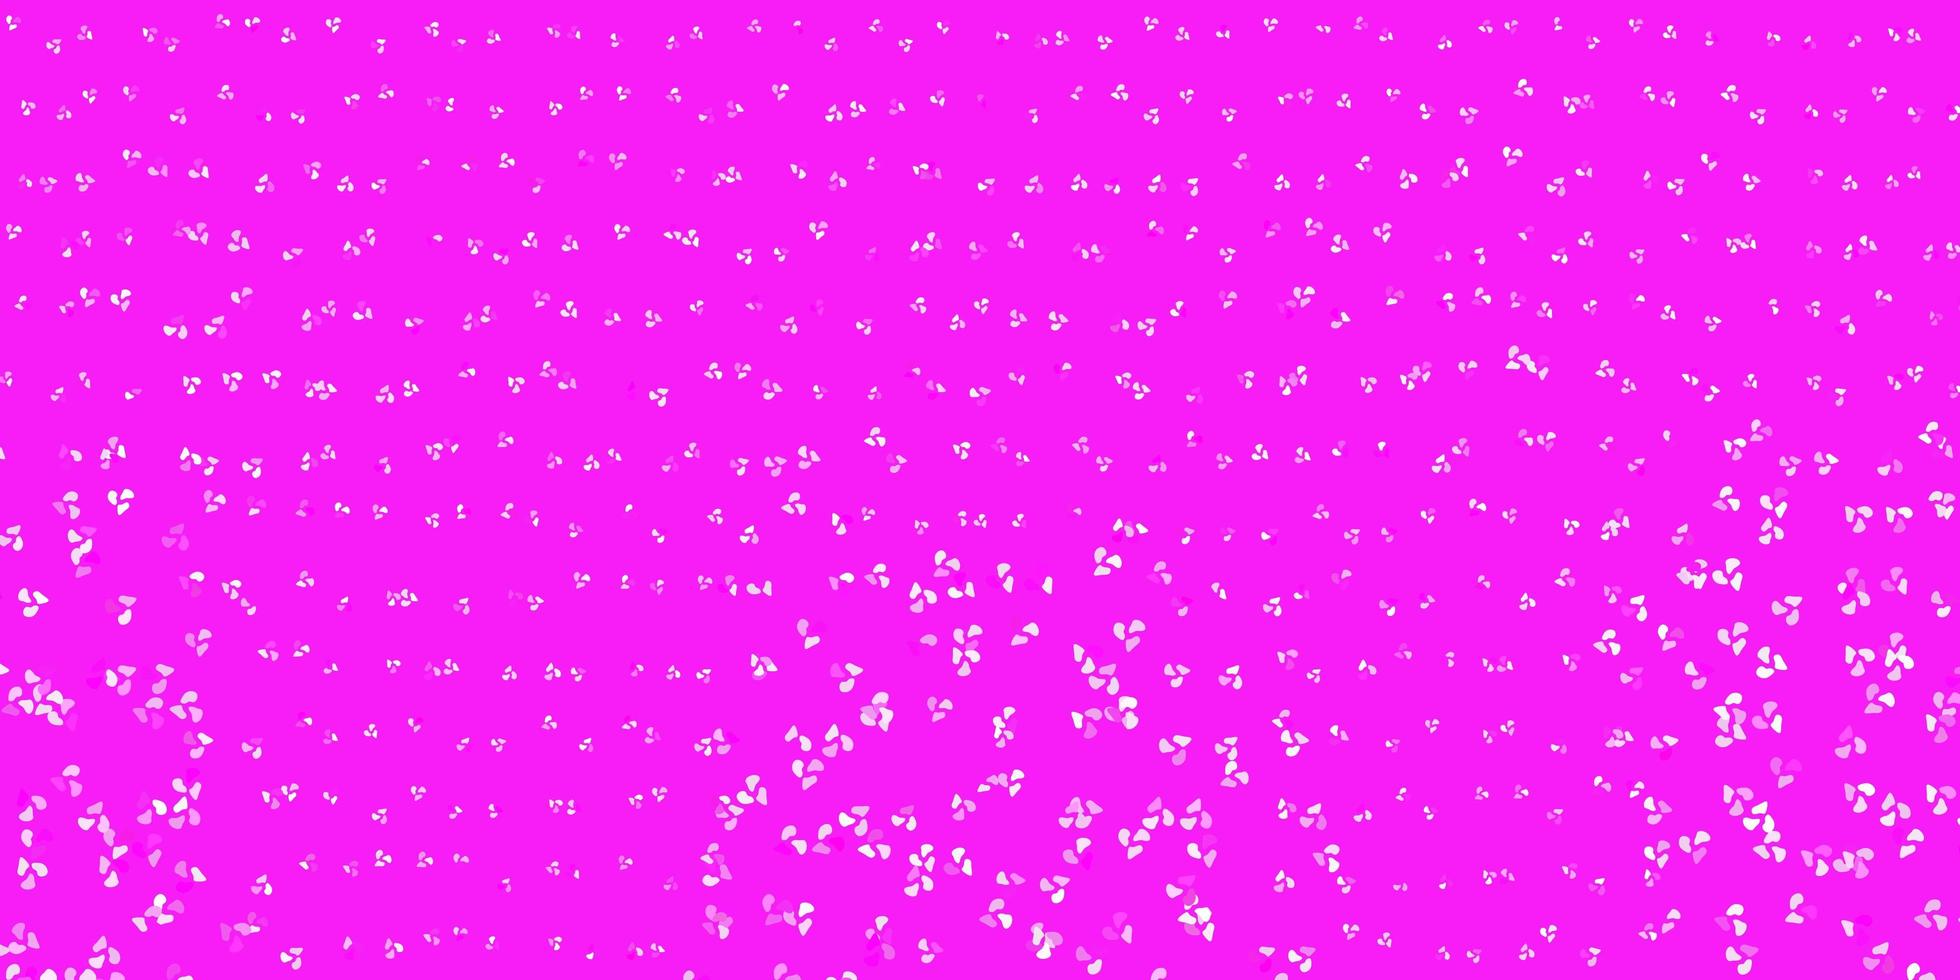 plantilla de vector rosa claro con formas abstractas.